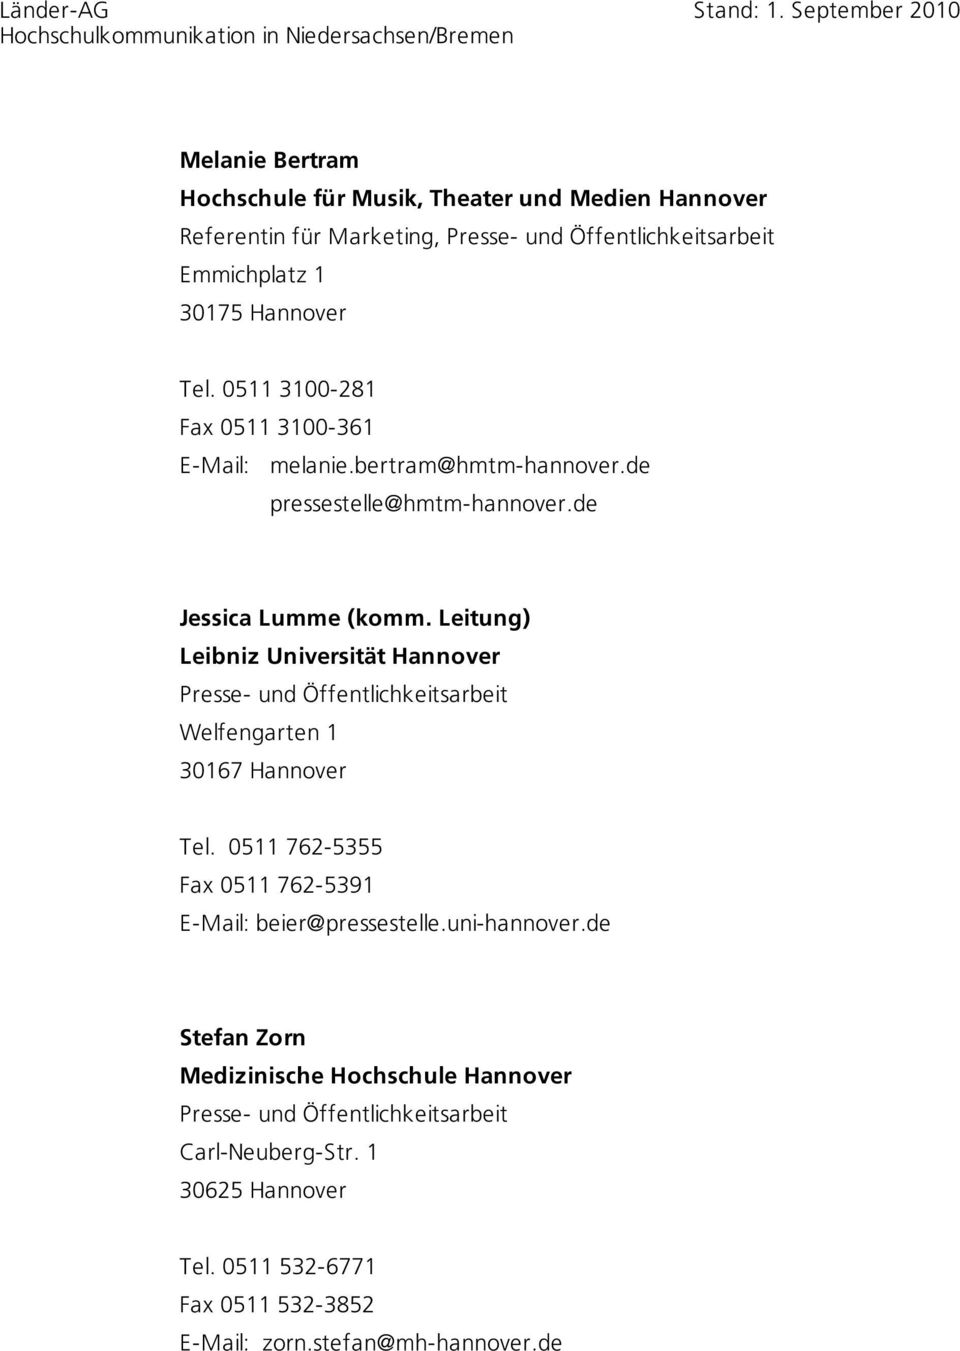 Leitung) Leibniz Universität Hannover Welfengarten 1 30167 Hannover Tel. 0511 762-5355 Fax 0511 762-5391 E-Mail: beier@pressestelle.